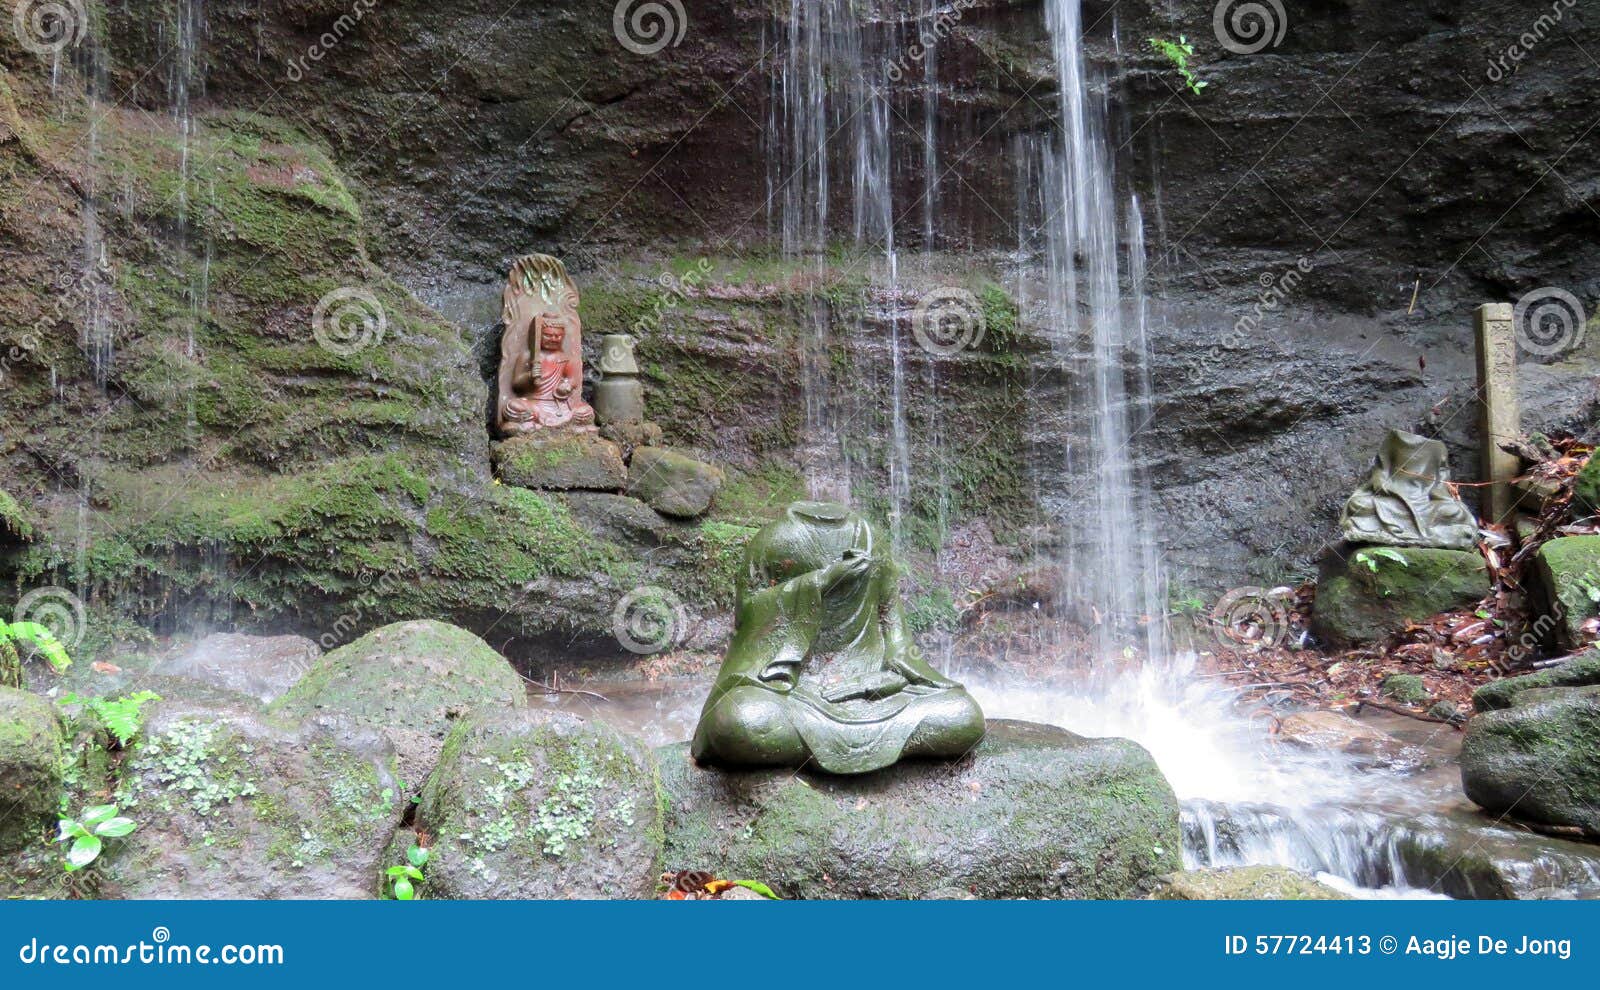 tokai rakan in waterfall at nihon ji temple in japan